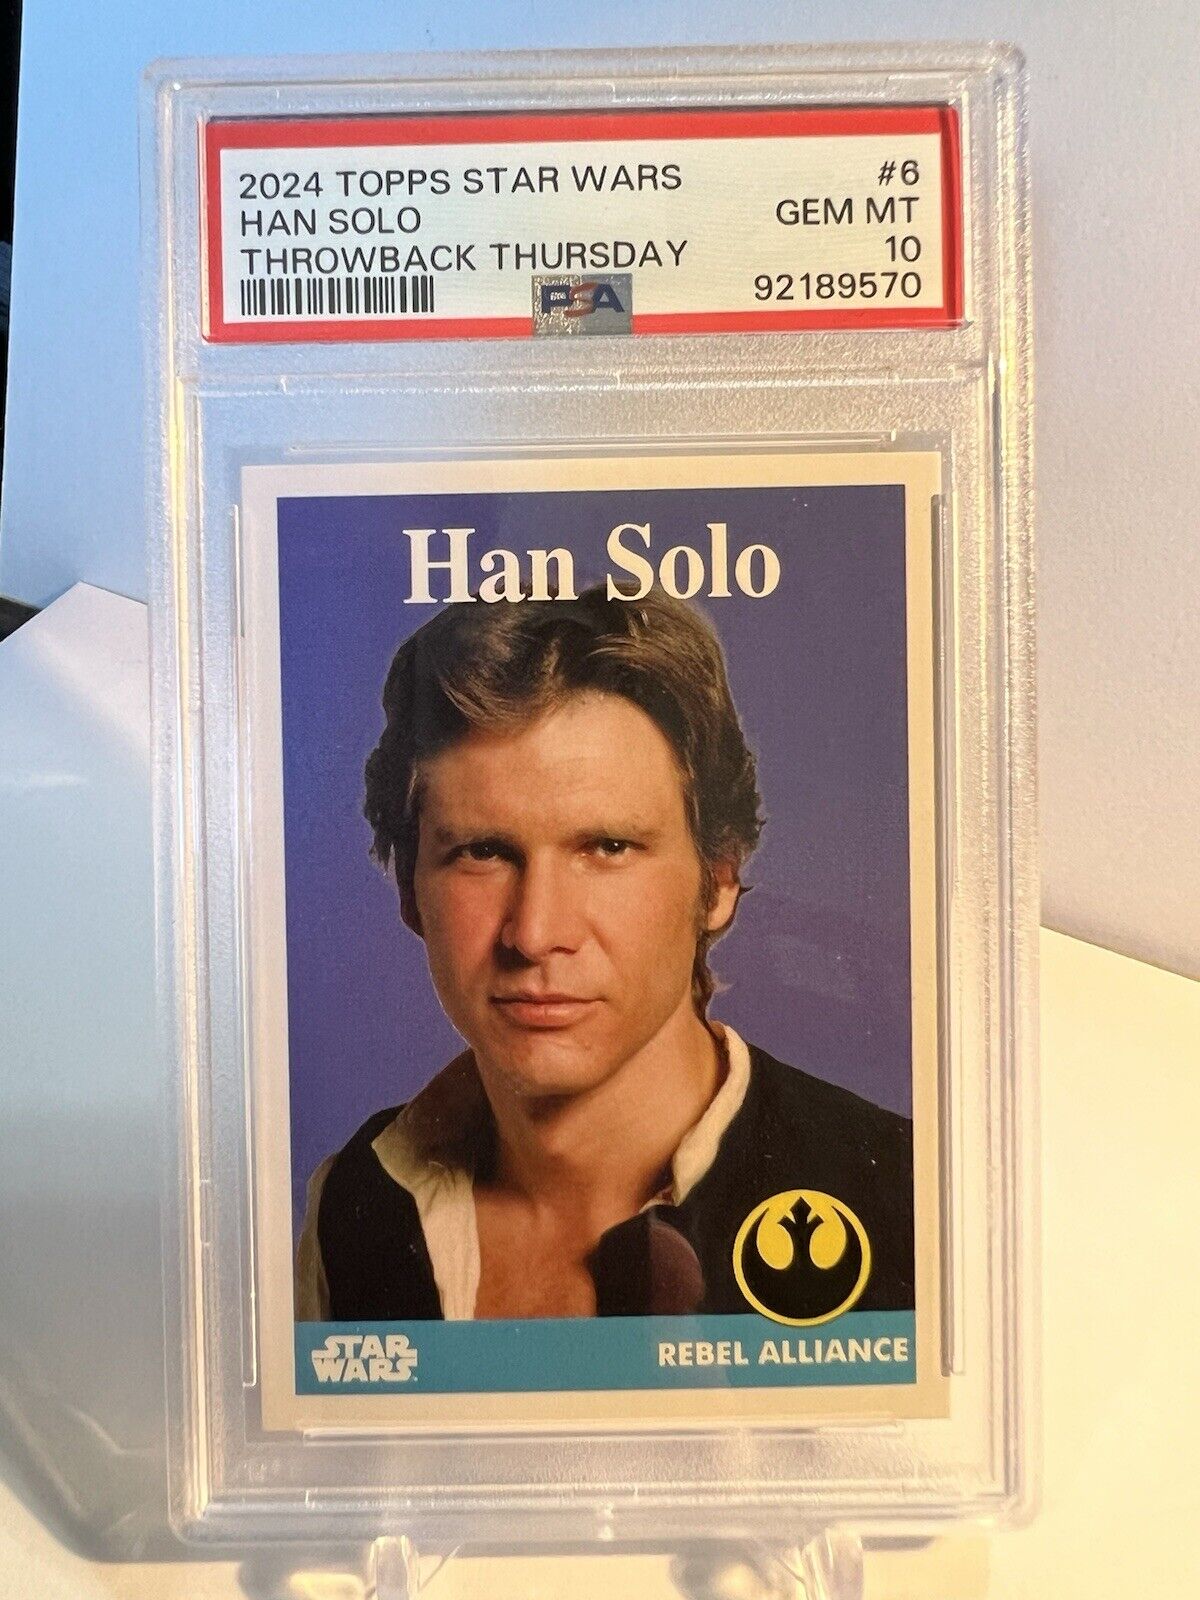 2024 Topps Star Wars #6 - Han Solo Throwback Thursday PSA 10 Gem Mint